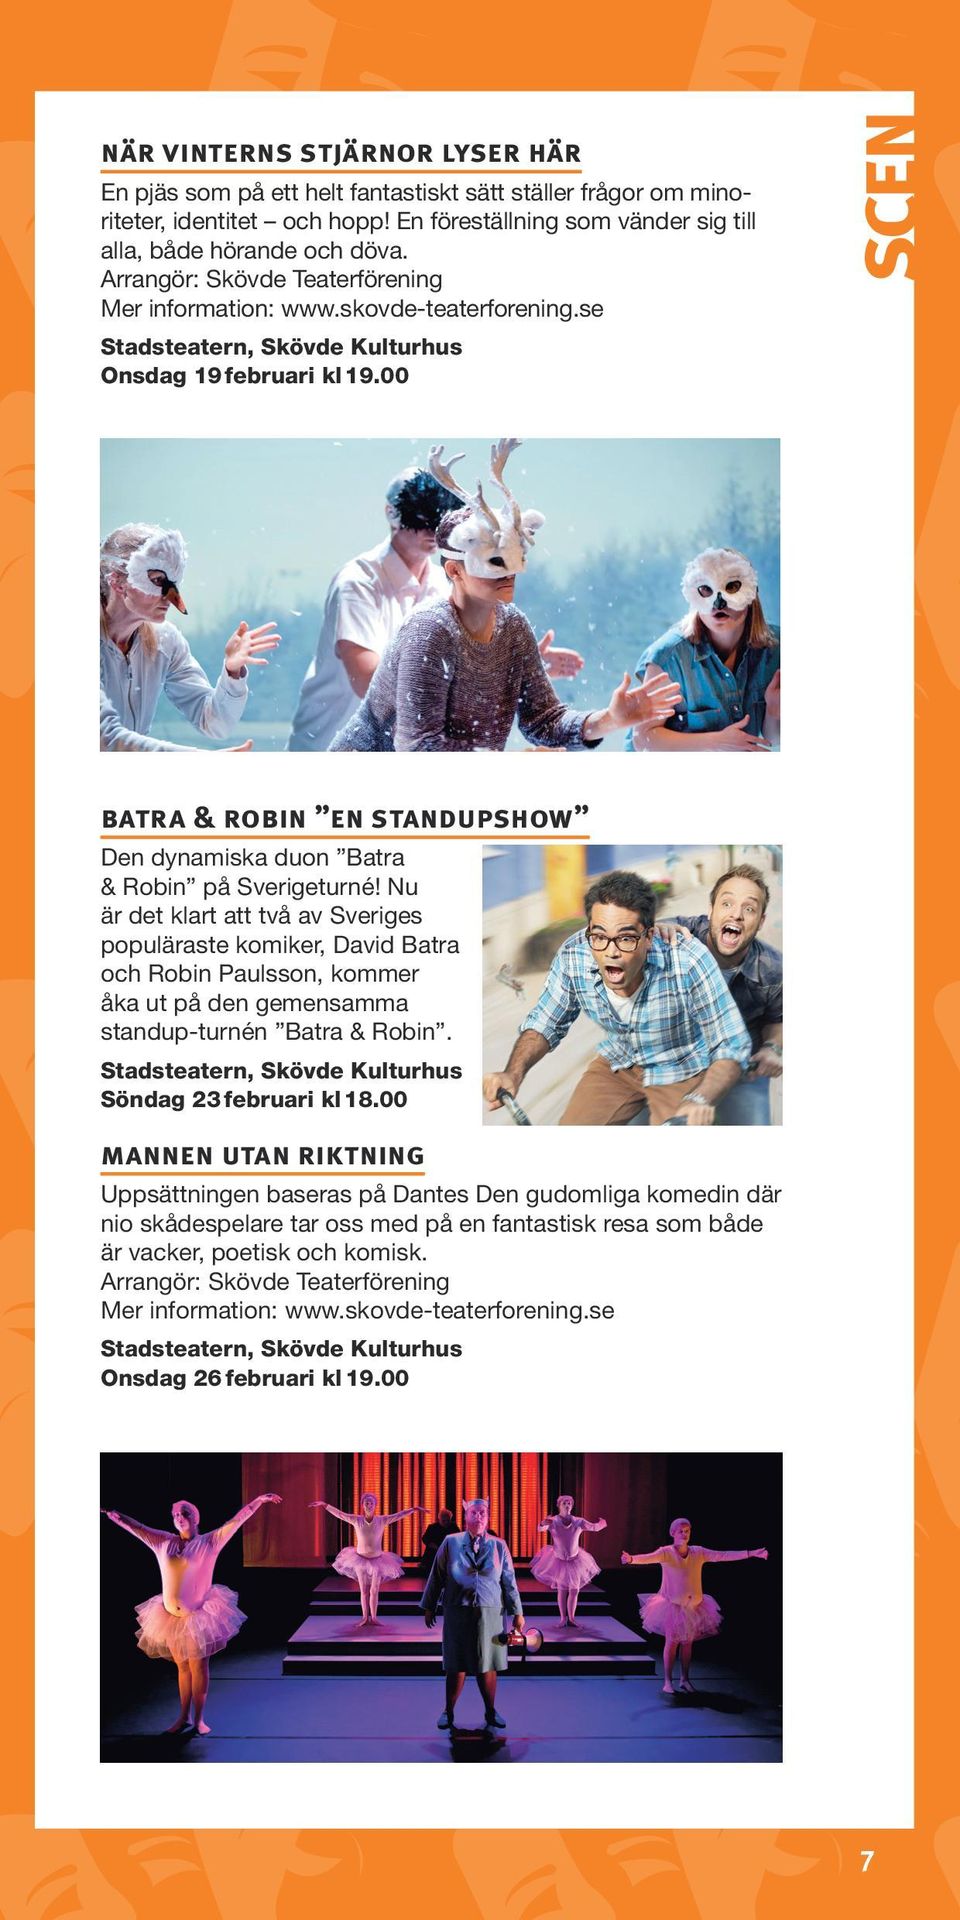 00 scen batra & robin en standupshow Den dynamiska duon Batra & Robin på Sverigeturné!